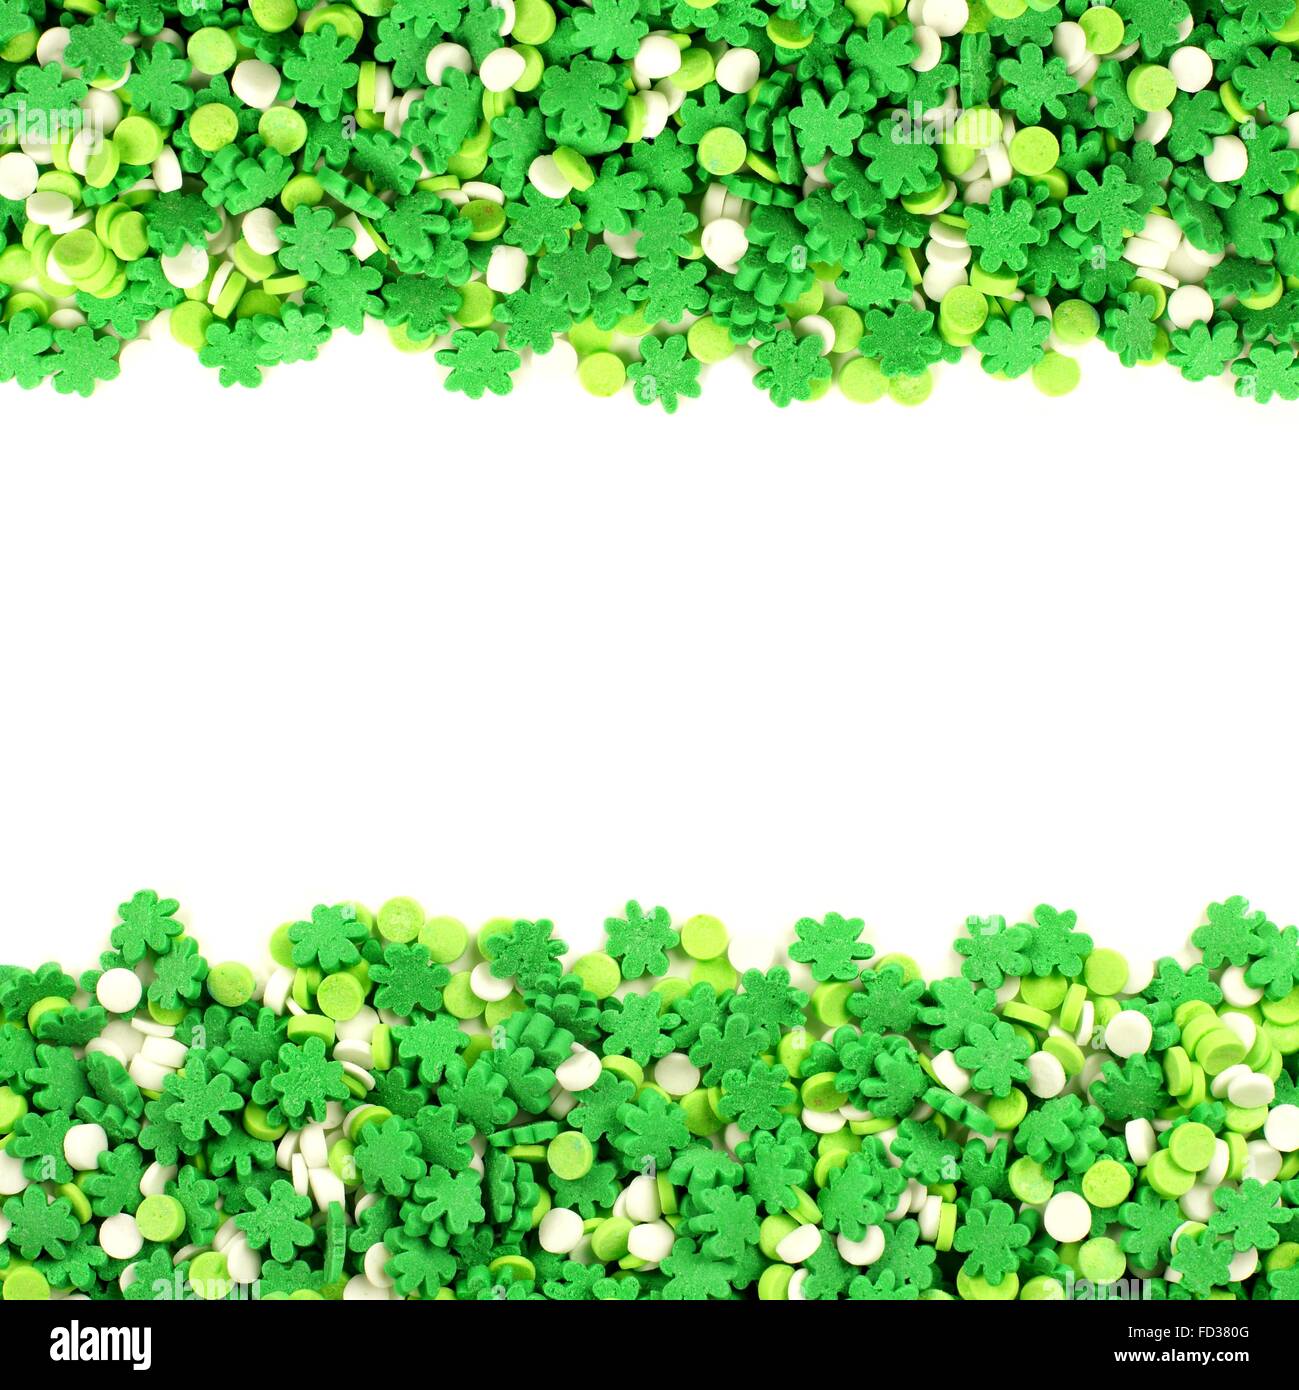 St. Patricks Day Rahmen des grünen Kleeblatt Süßigkeiten Streusel über weiß Stockfoto